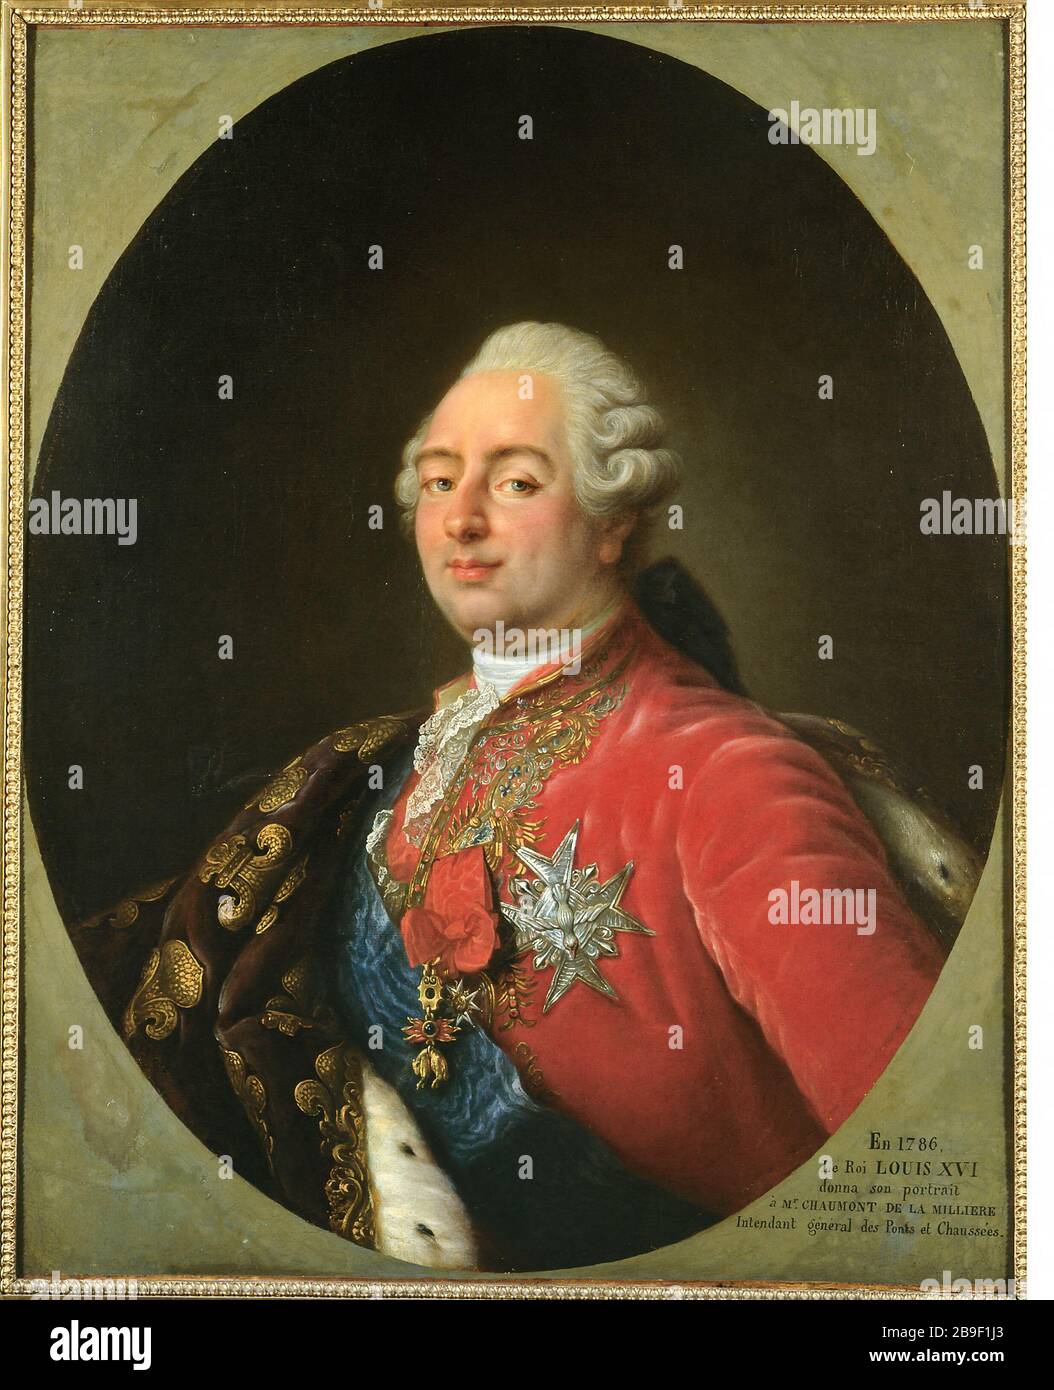 PORTRAIT OF LOUIS XVI Antoine-François Callet (1741-1823, atelier de). 'Portrait de Louis XVI' (1754-1793). Une autre version est conservée au musée de Versailles. Huile sur toile, 1786. Paris, musée Carnavalet. Stock Photo